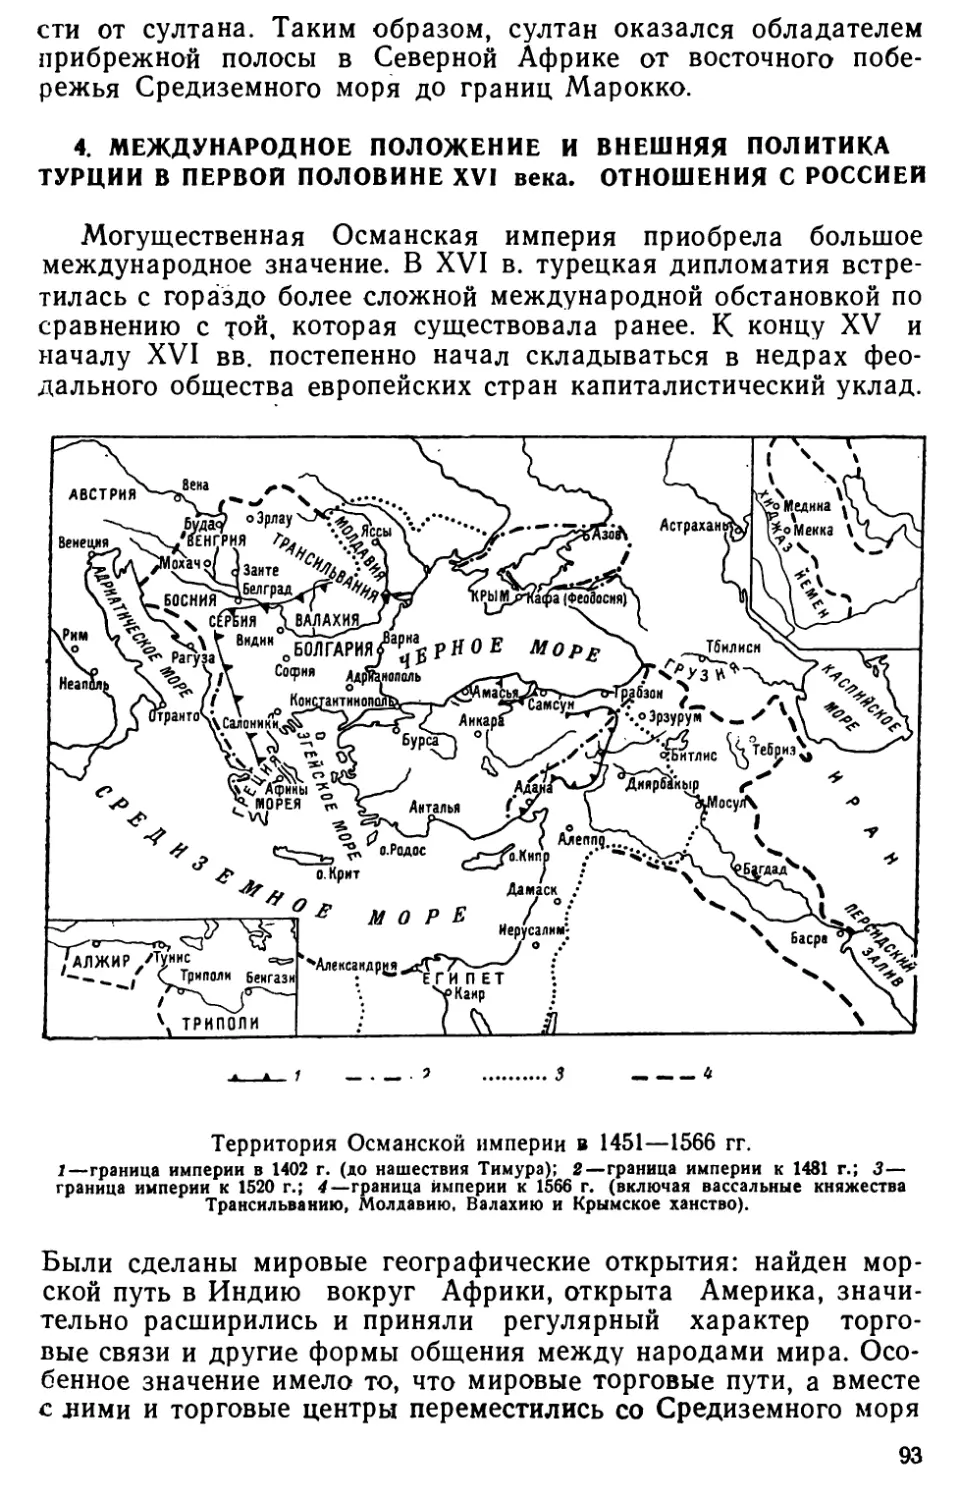 4. Международное положение и внешняя политика Турции в первой половине XVI века. Отношения с Россией